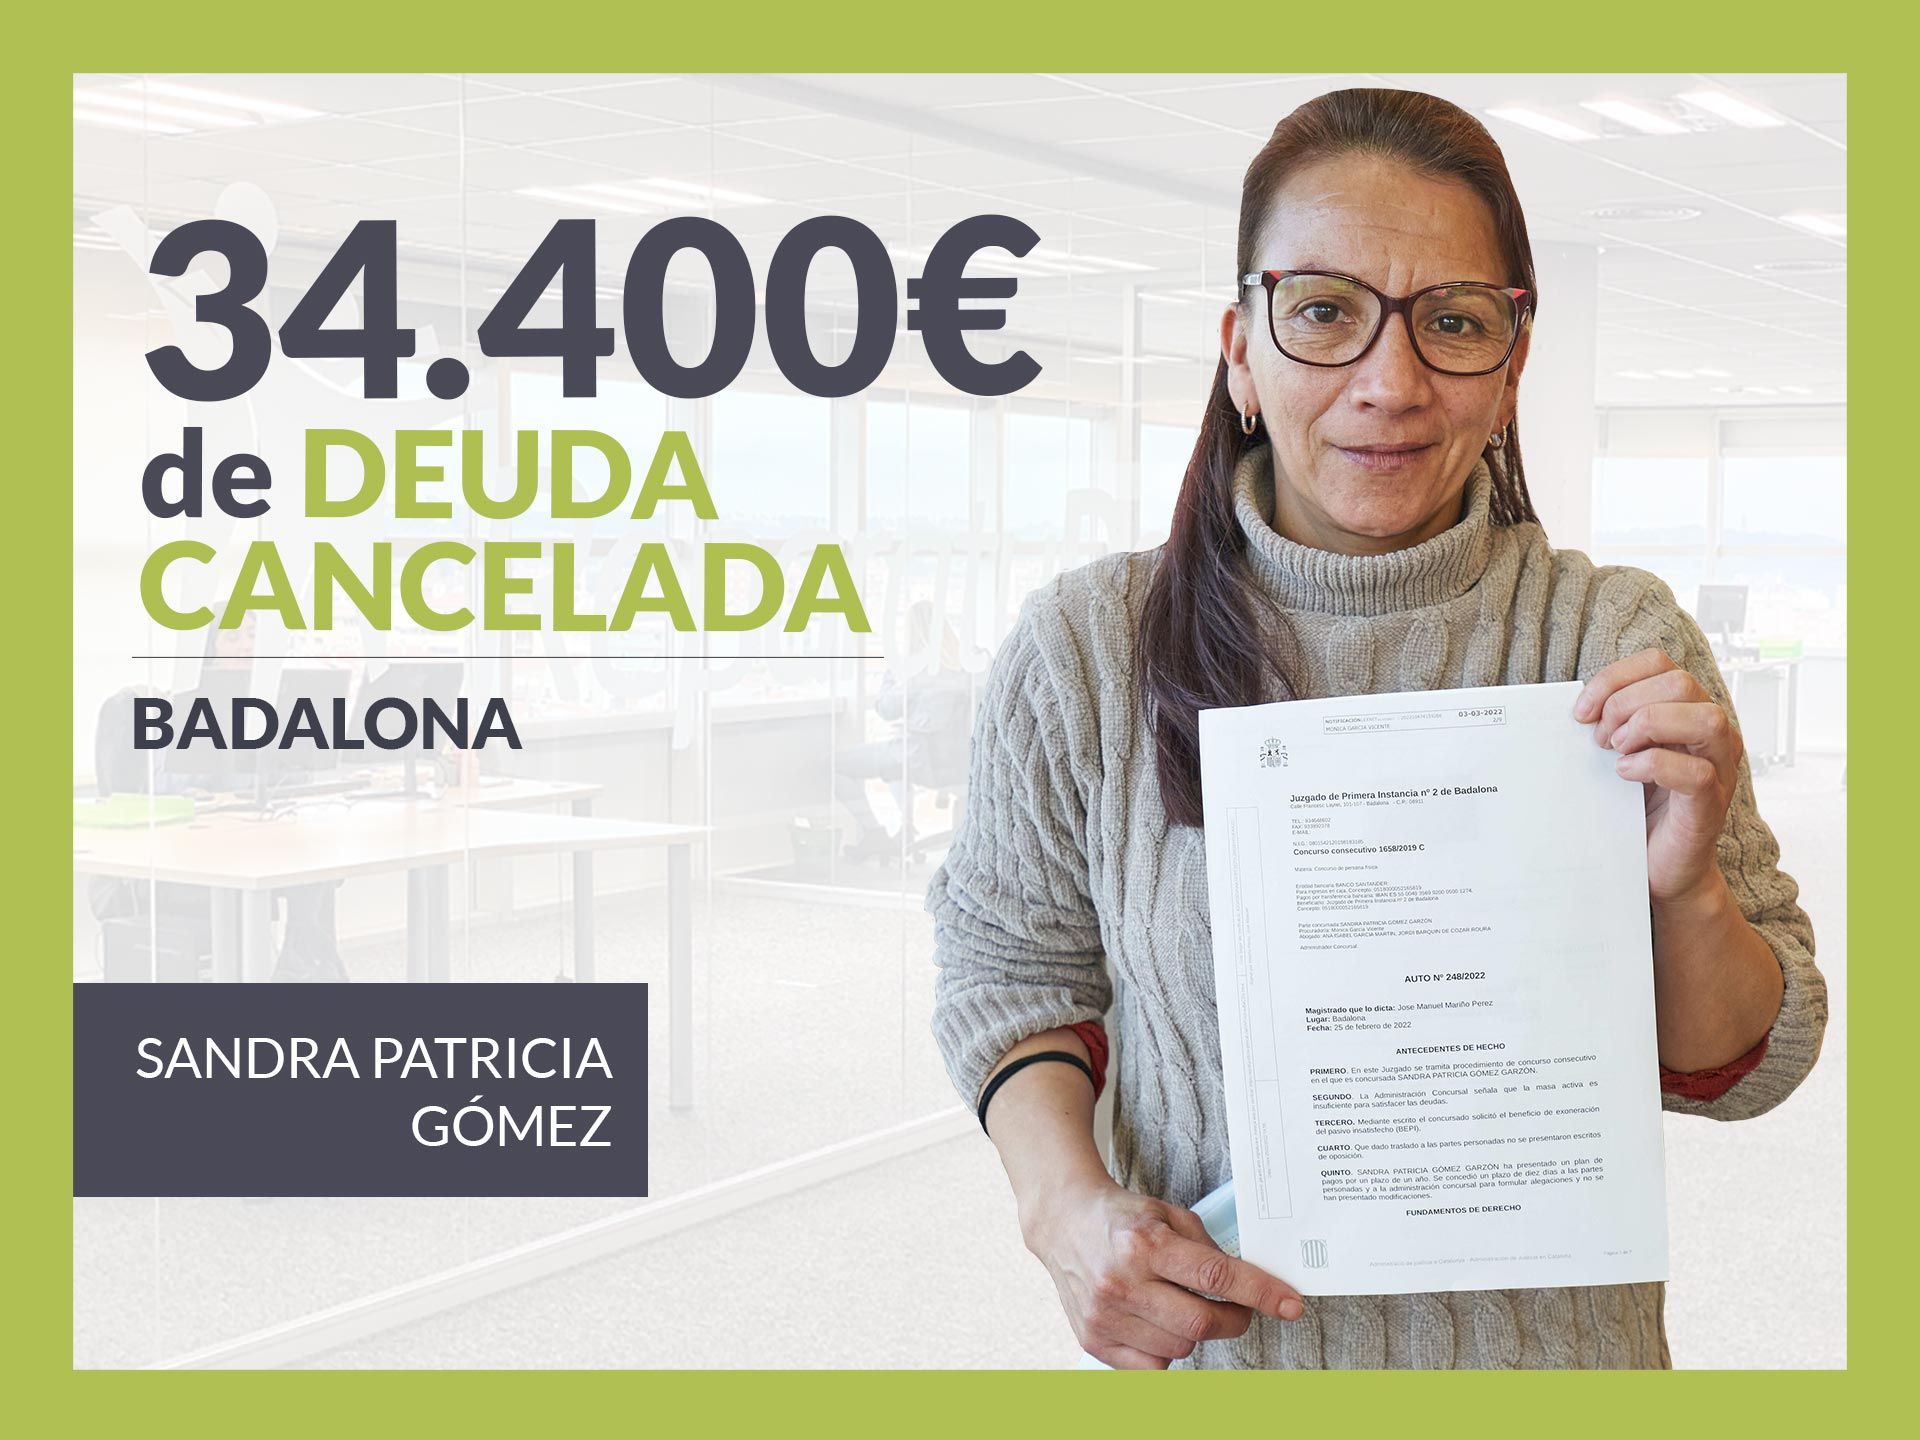 Repara tu Deuda Abogados cancela 34.400? en Badalona (Barcelona) con la Ley de Segunda Oportunidad